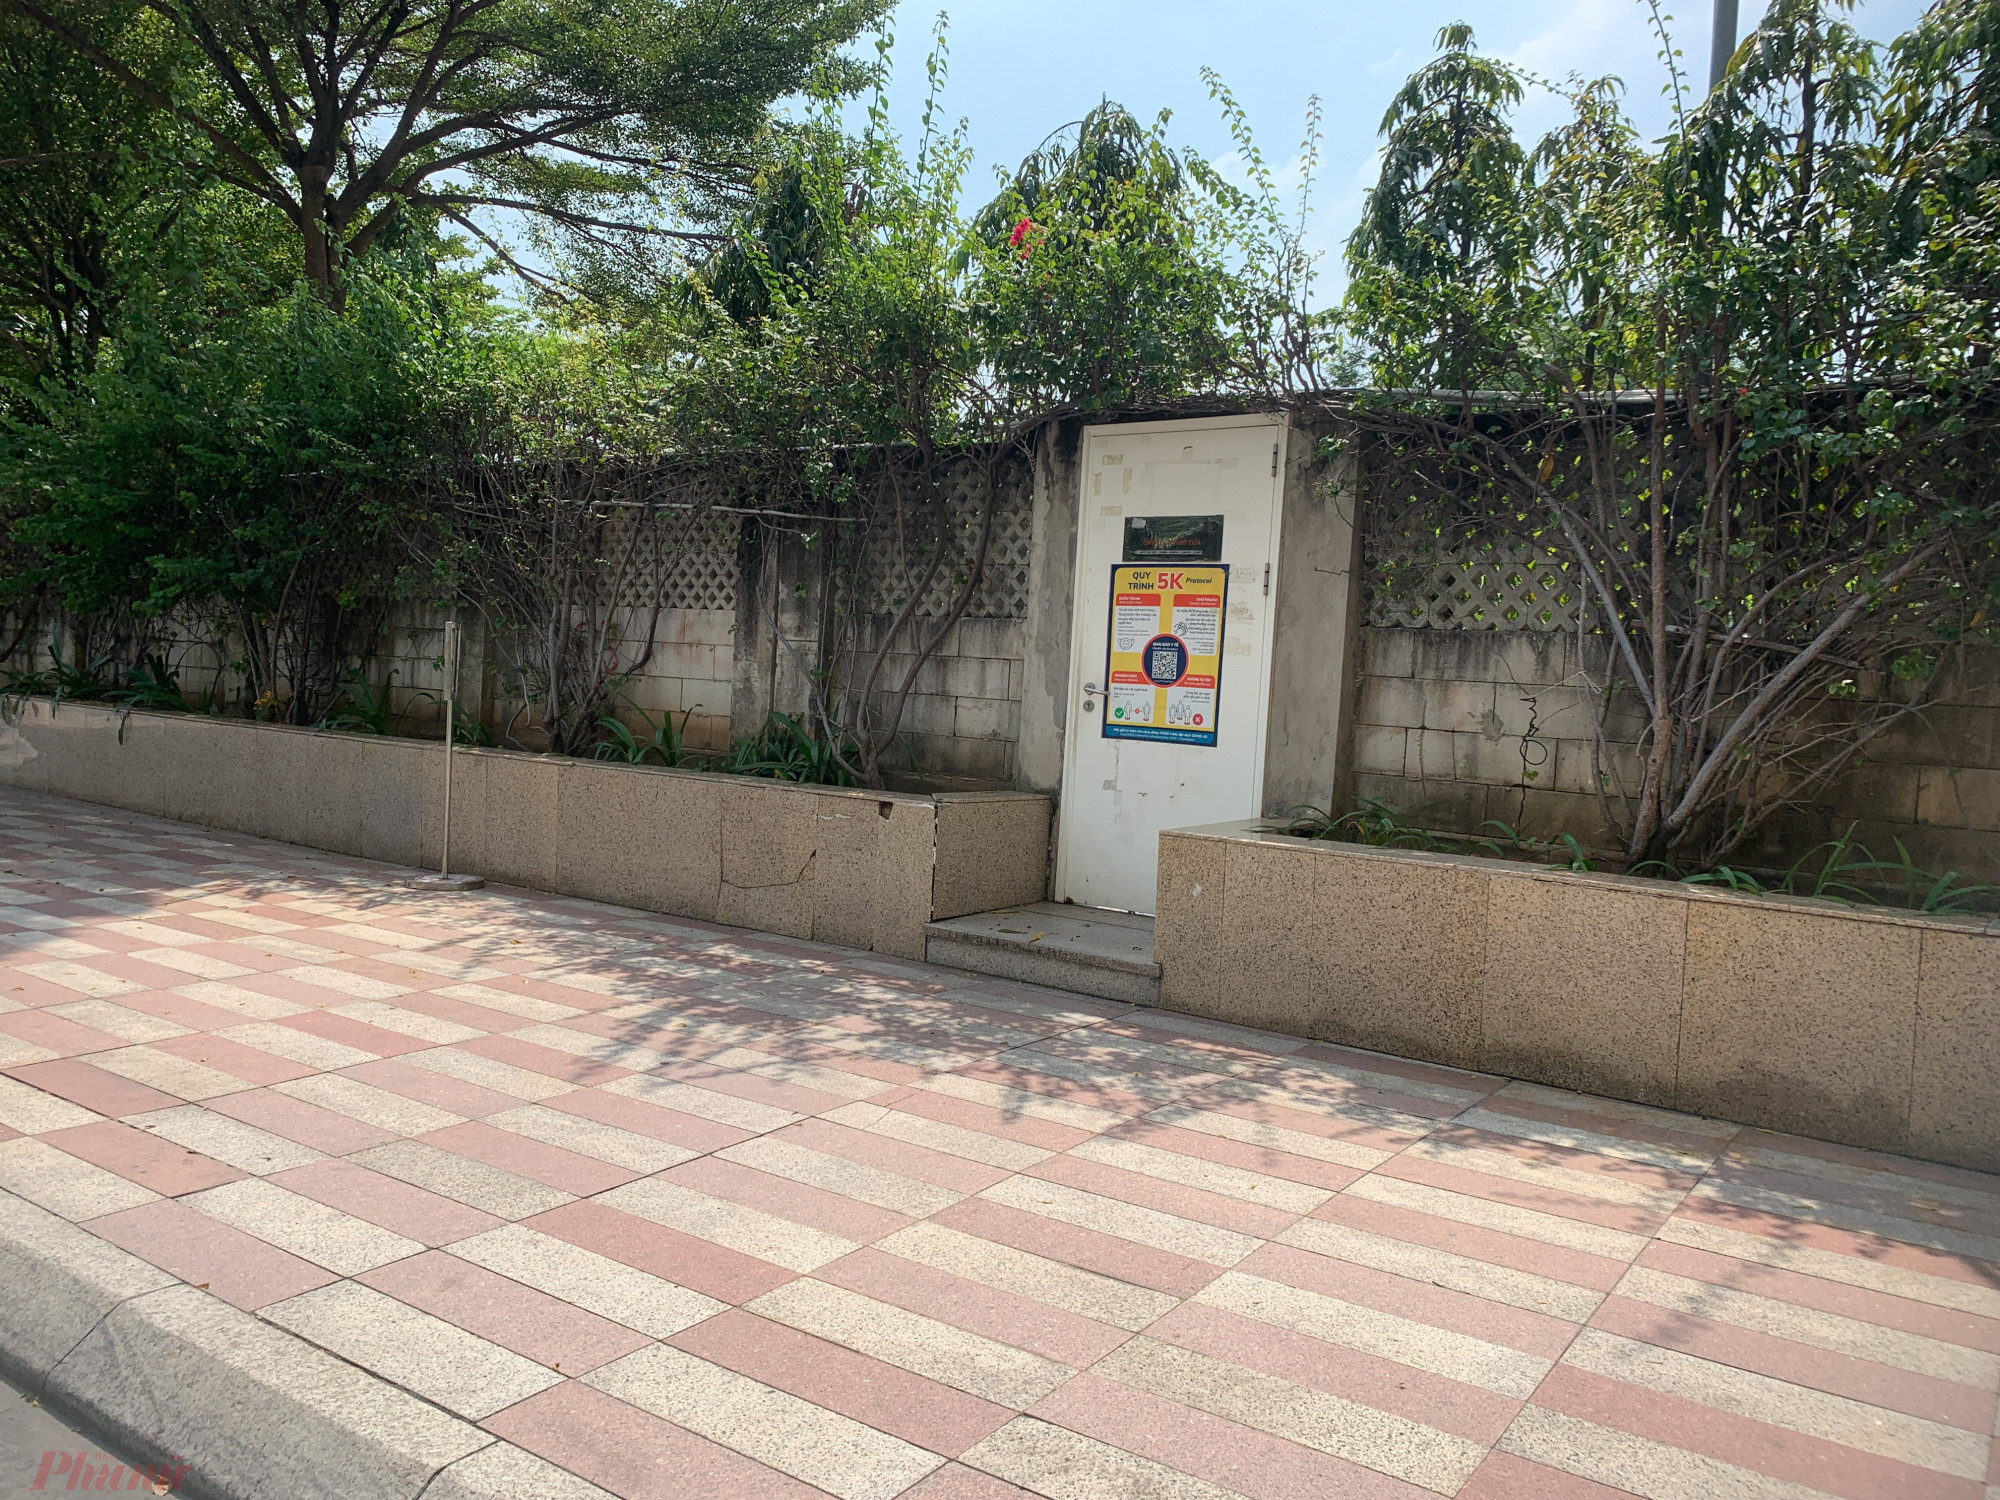 cánh cổng nhỏ rộng khoảng 1m, cao 2m được bố trí để phụ huynh dẫn bộ con em qua Trường phổ thông Song ngữ quốc tế (nằm bên khu Saigon Pearl).